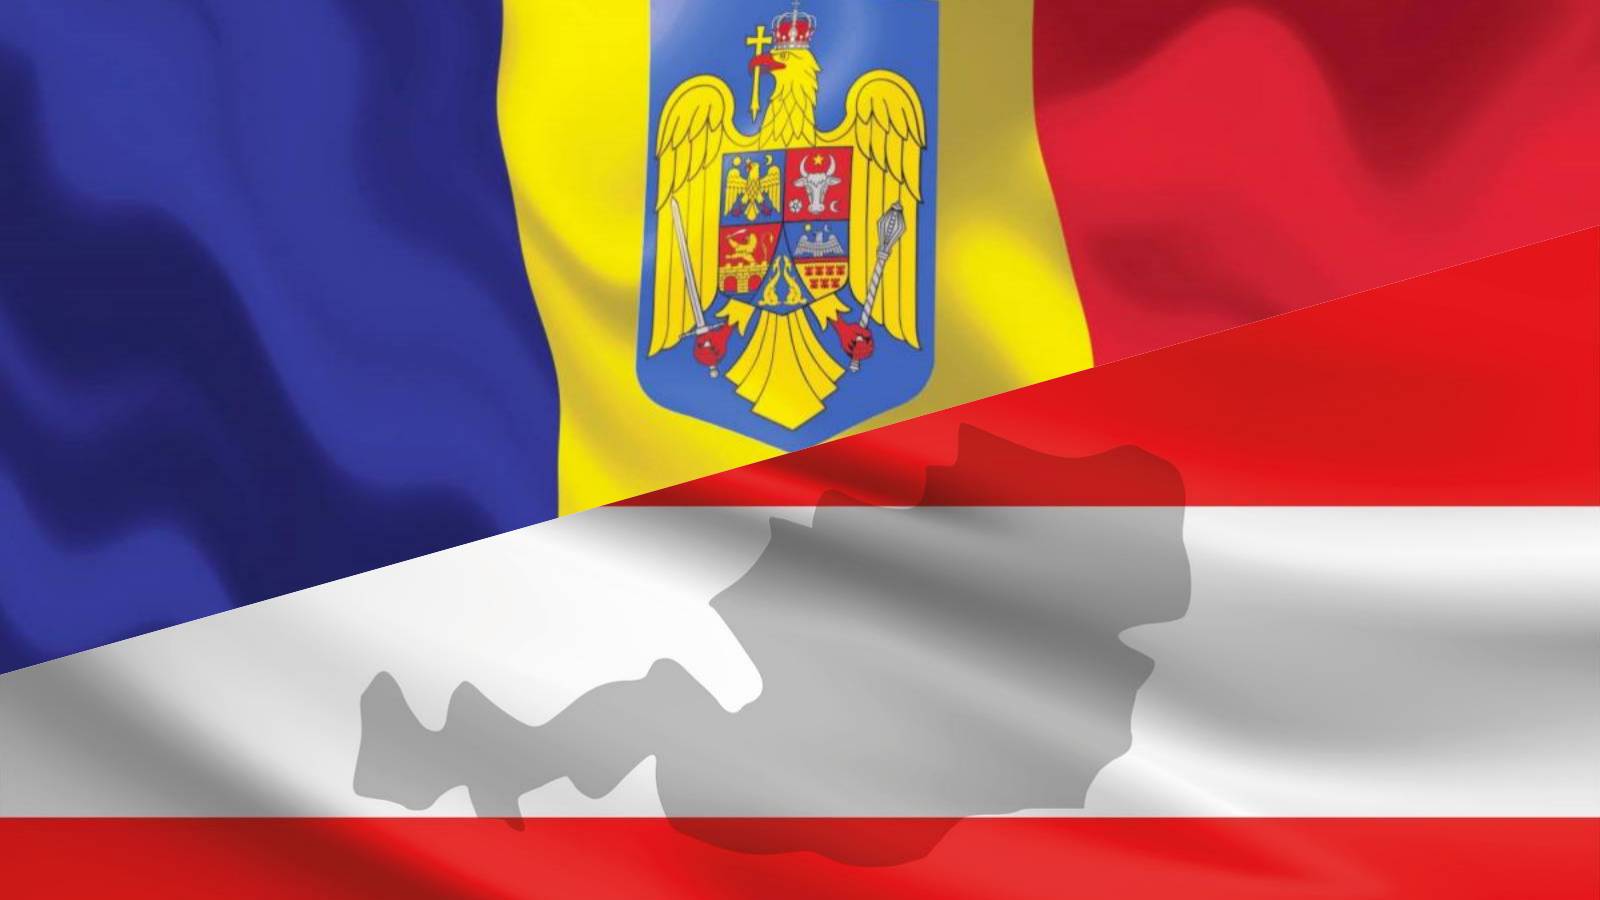 Austria PRESIONADO Continuar Anuncios IMPORTANTES Adhesión de Rumania a Schengen